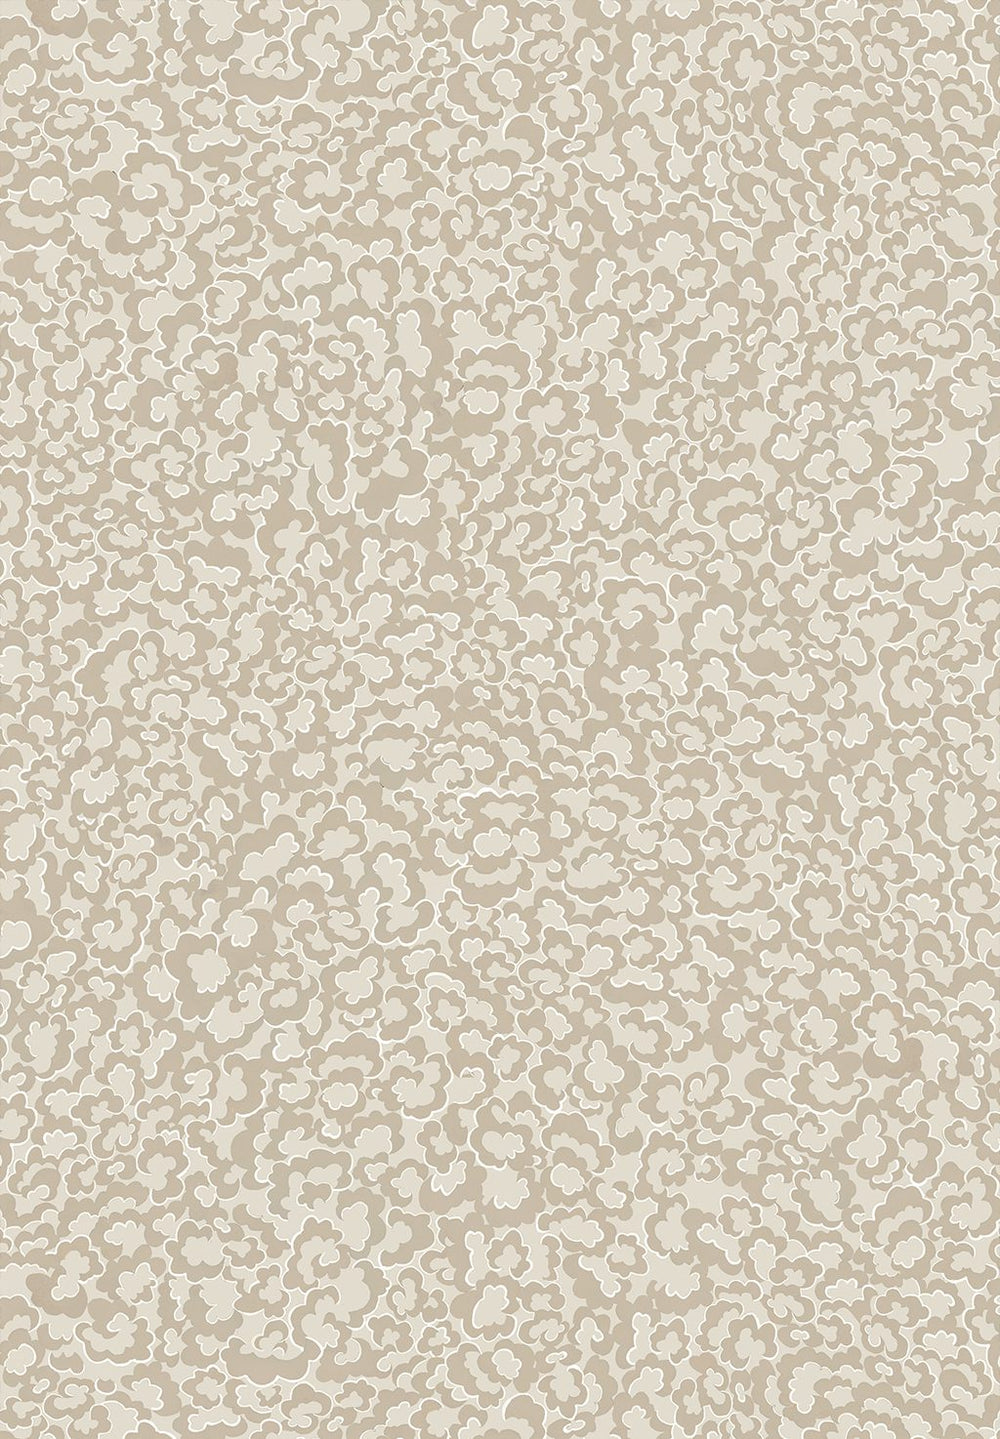 Josephine-Munsey-wallpaper-clouds-small-pattern-repeat-tonal-stylized-cliffwell-stone